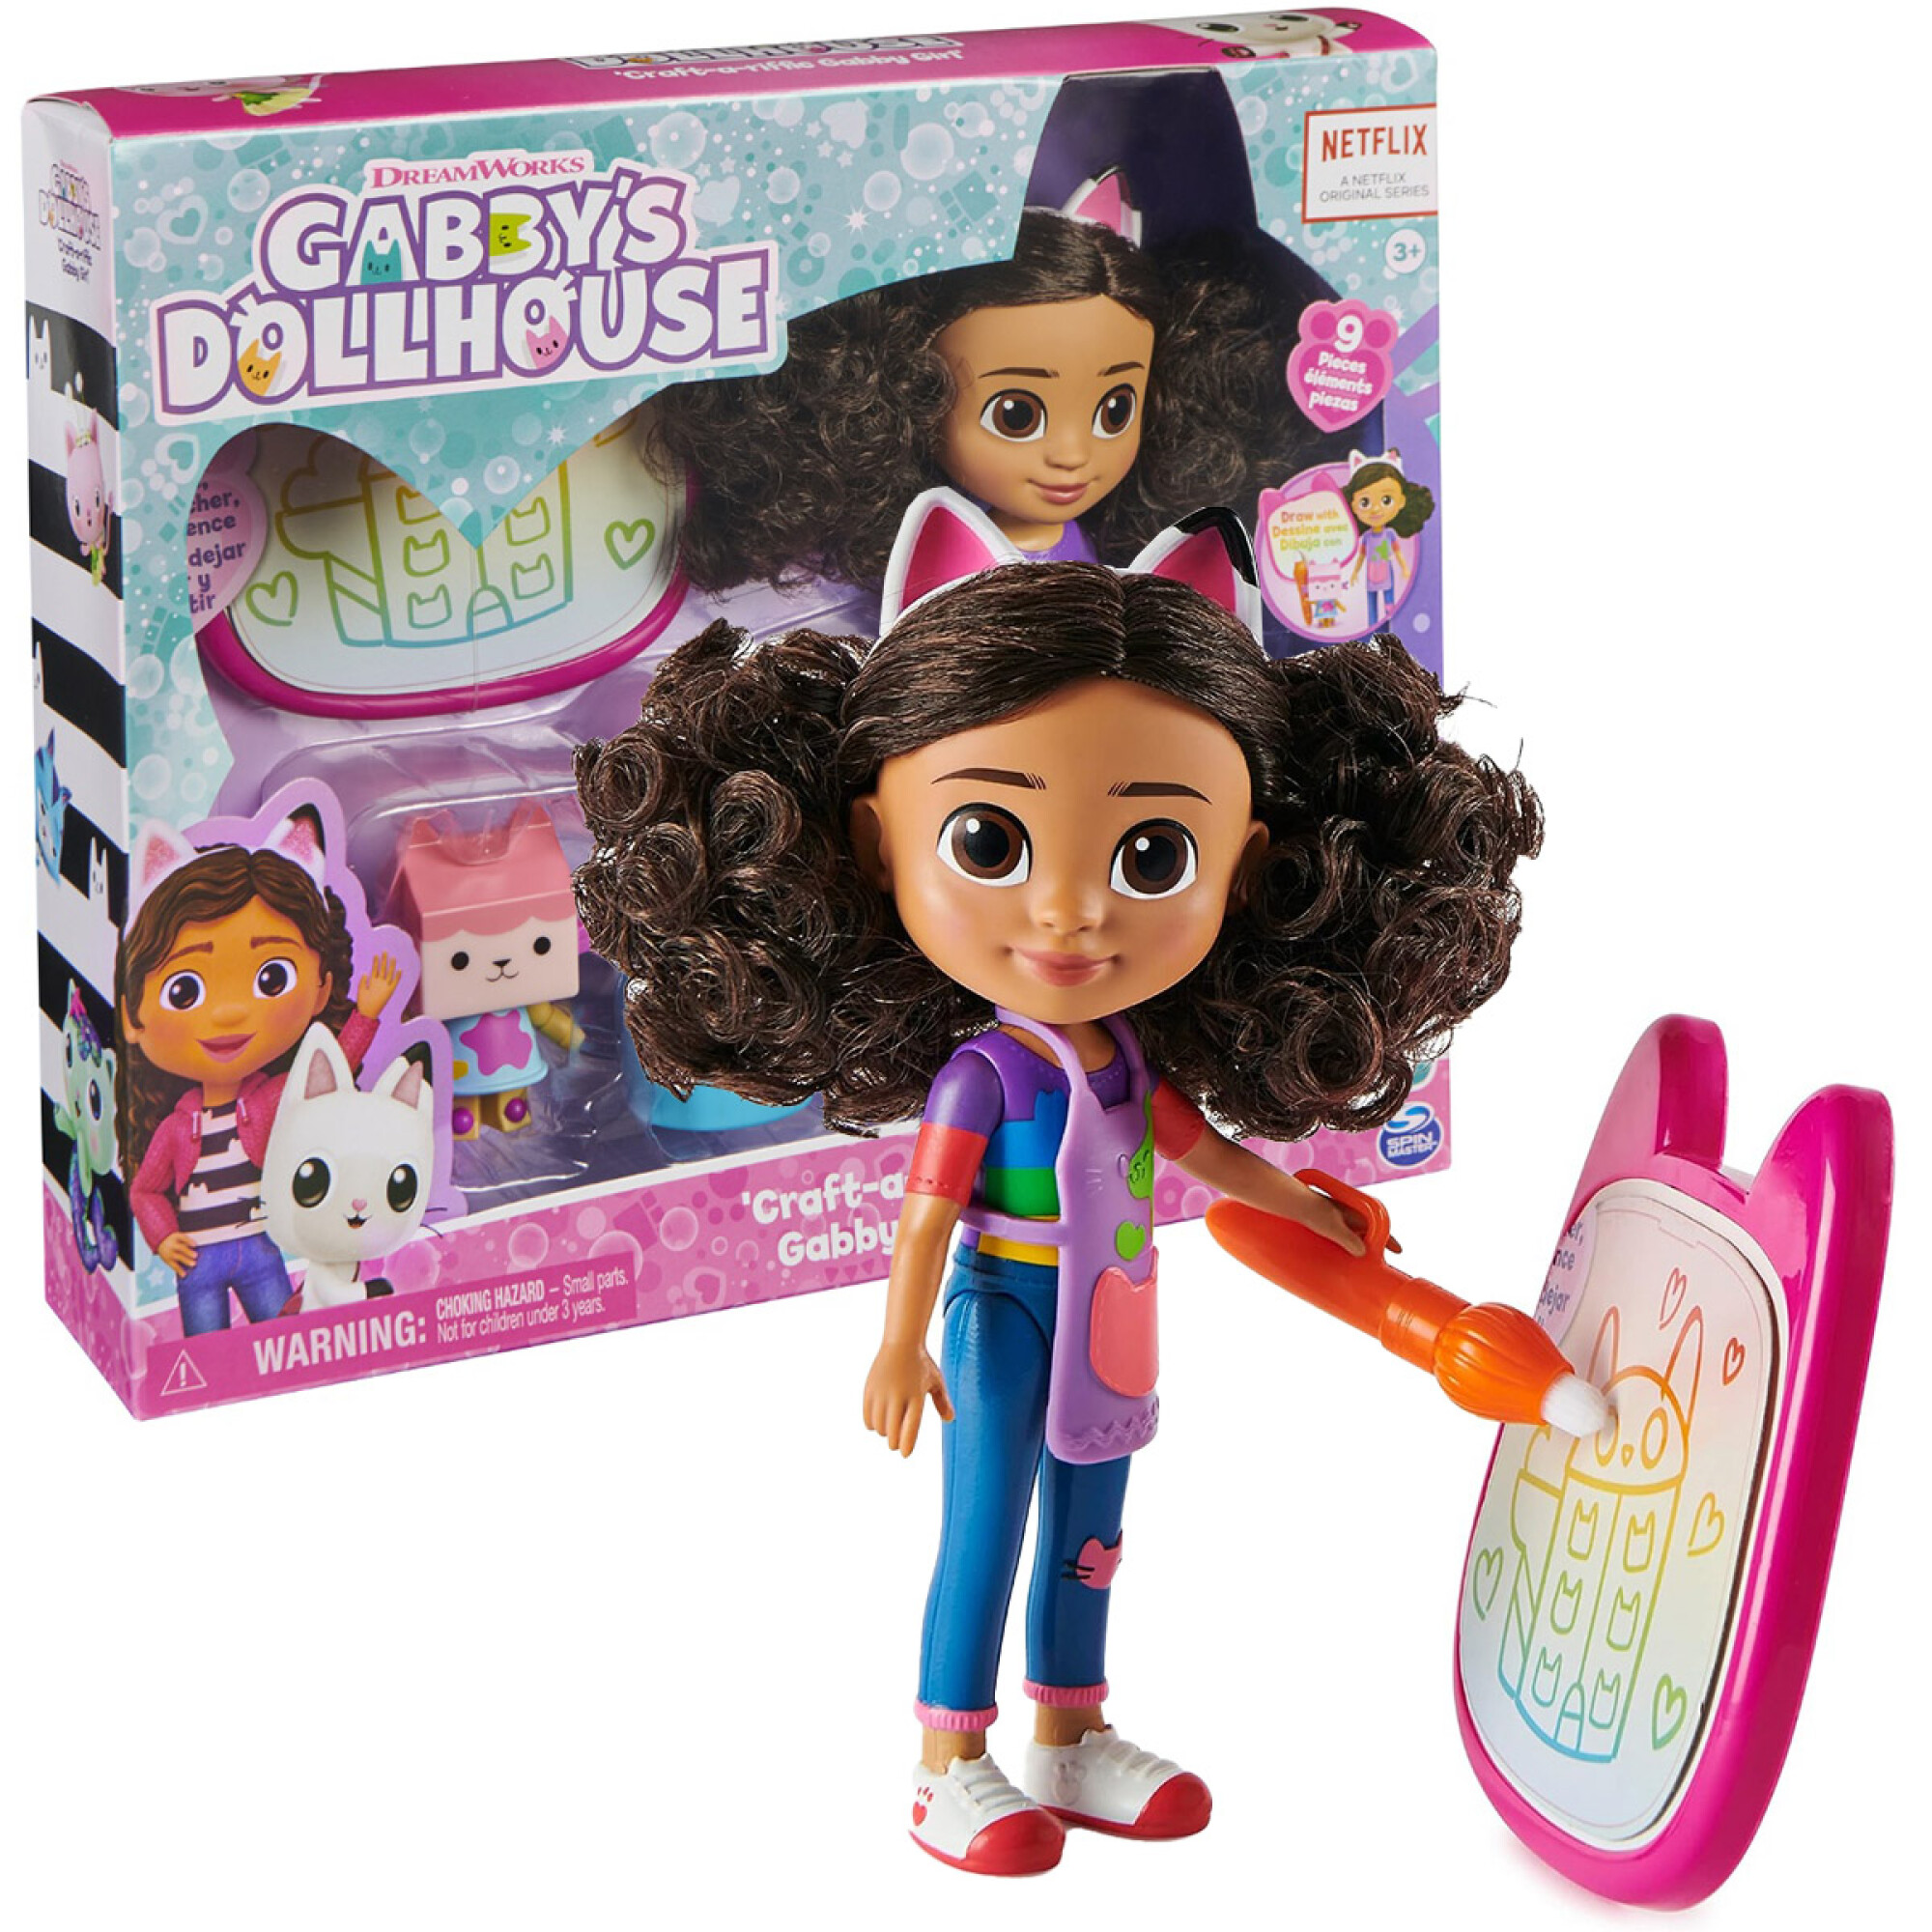  Gabby's Dollhouse - Muñeca de Gabby (edición de viaje) de La  casa de muñecas de Gabby con accesorios, 8 pulgadas, juguetes para niños a  partir de 3 años : Juguetes y Juegos